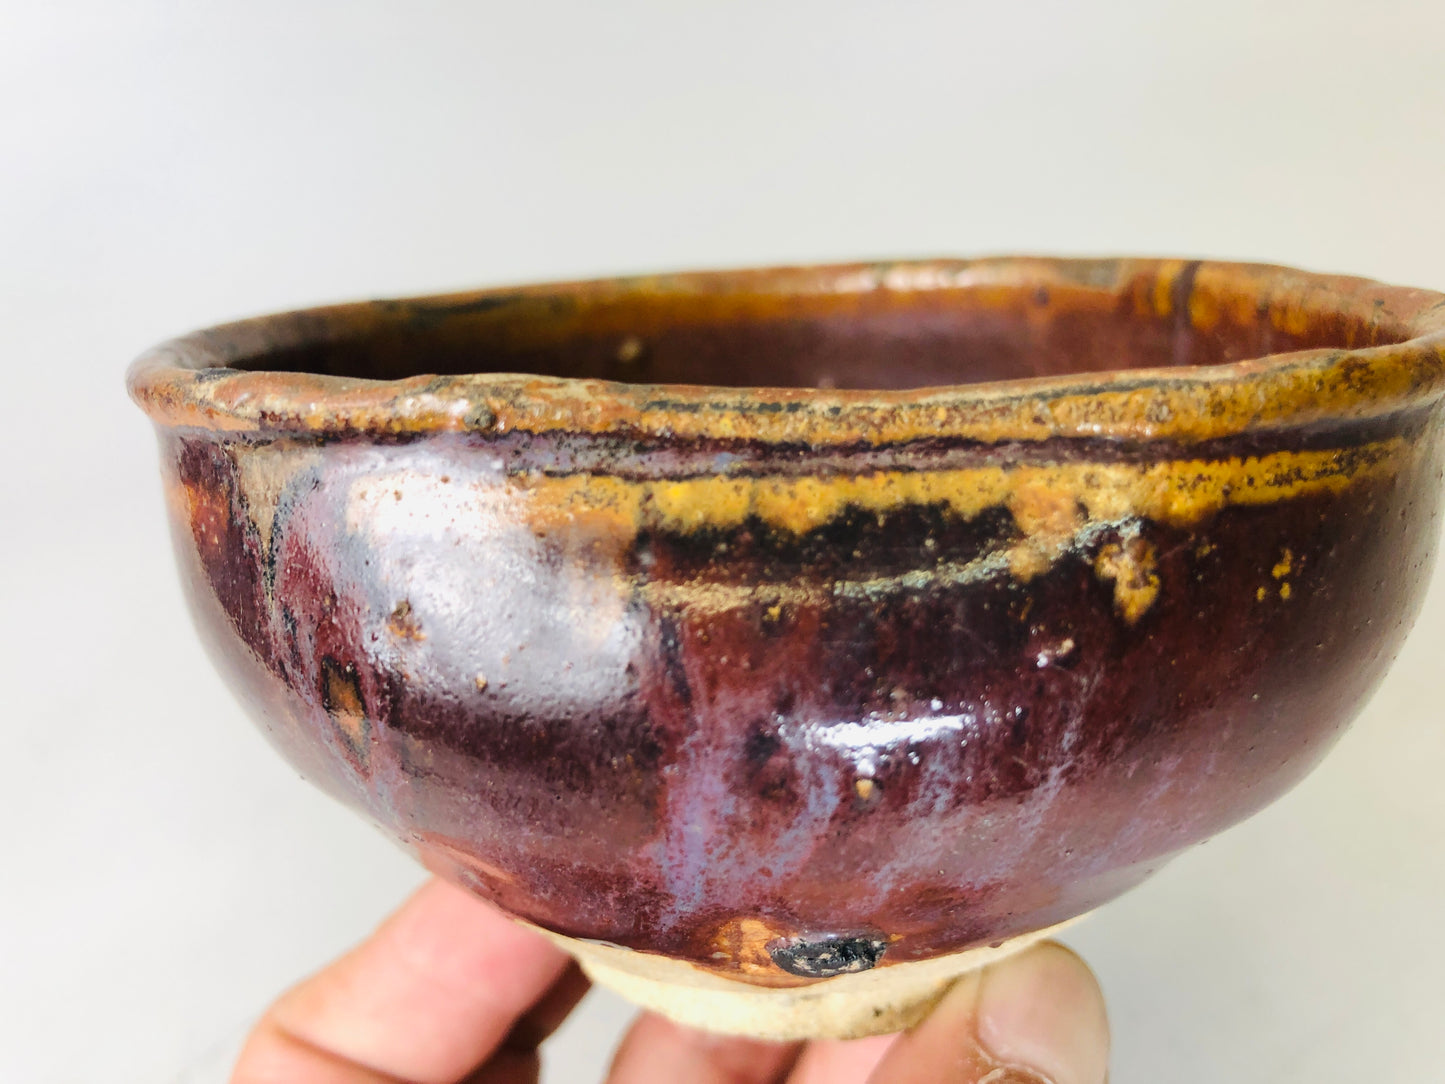 Y6148 [VIDEO] CHAWAN Seto-ware Tenmoku bowl Japan antique tea ceremony vintage pottery